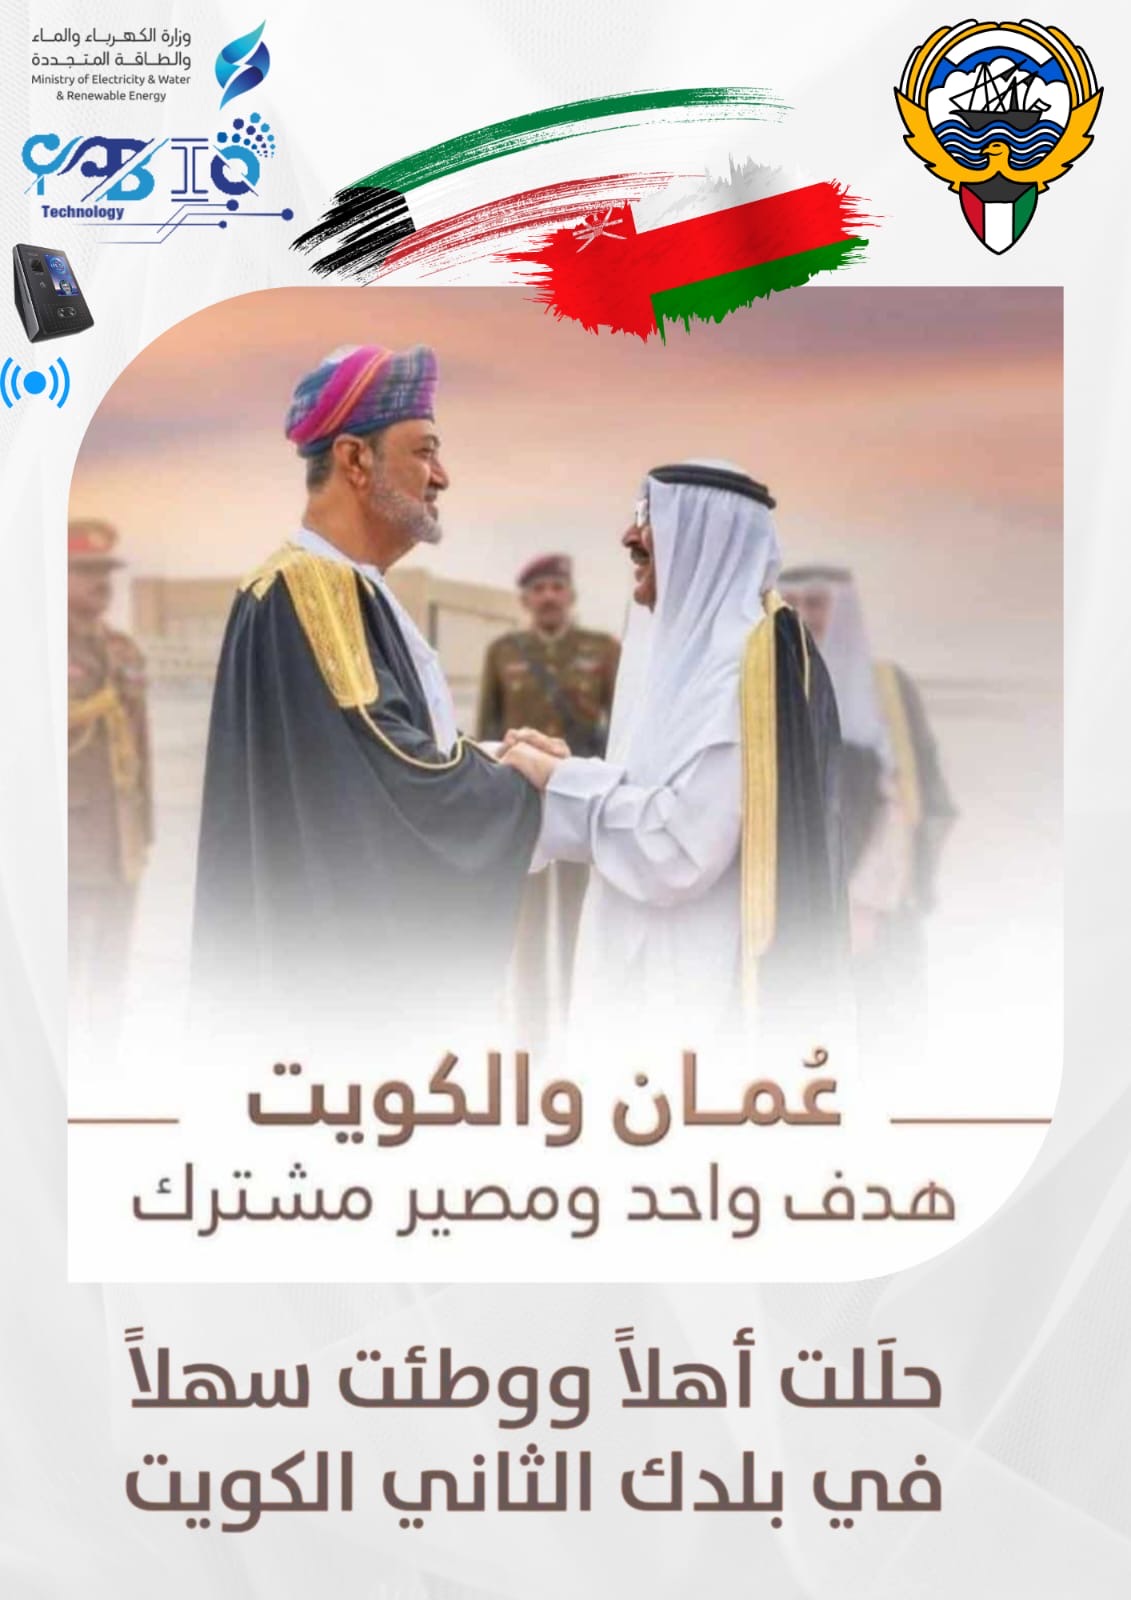 حللت أهلا ووطئت سهلا في بلدك الثاني الكويت